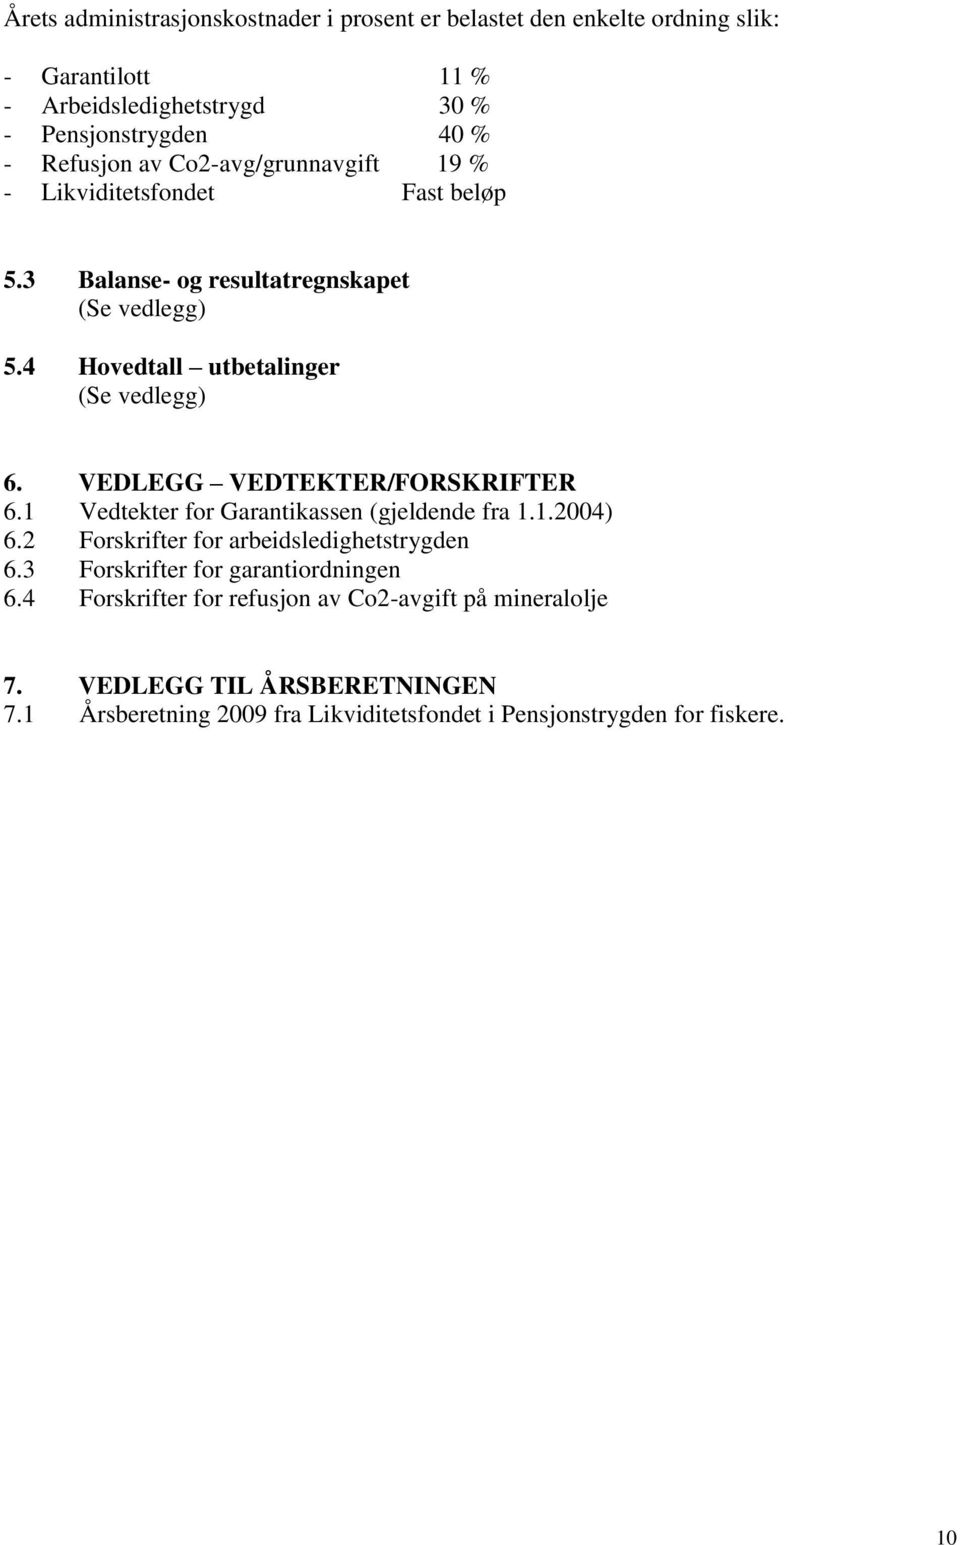 VEDLEGG VEDTEKTER/FORSKRIFTER 6.1 Vedtekter for Garantikassen (gjeldende fra 1.1.2004) 6.2 Forskrifter for arbeidsledighetstrygden 6.